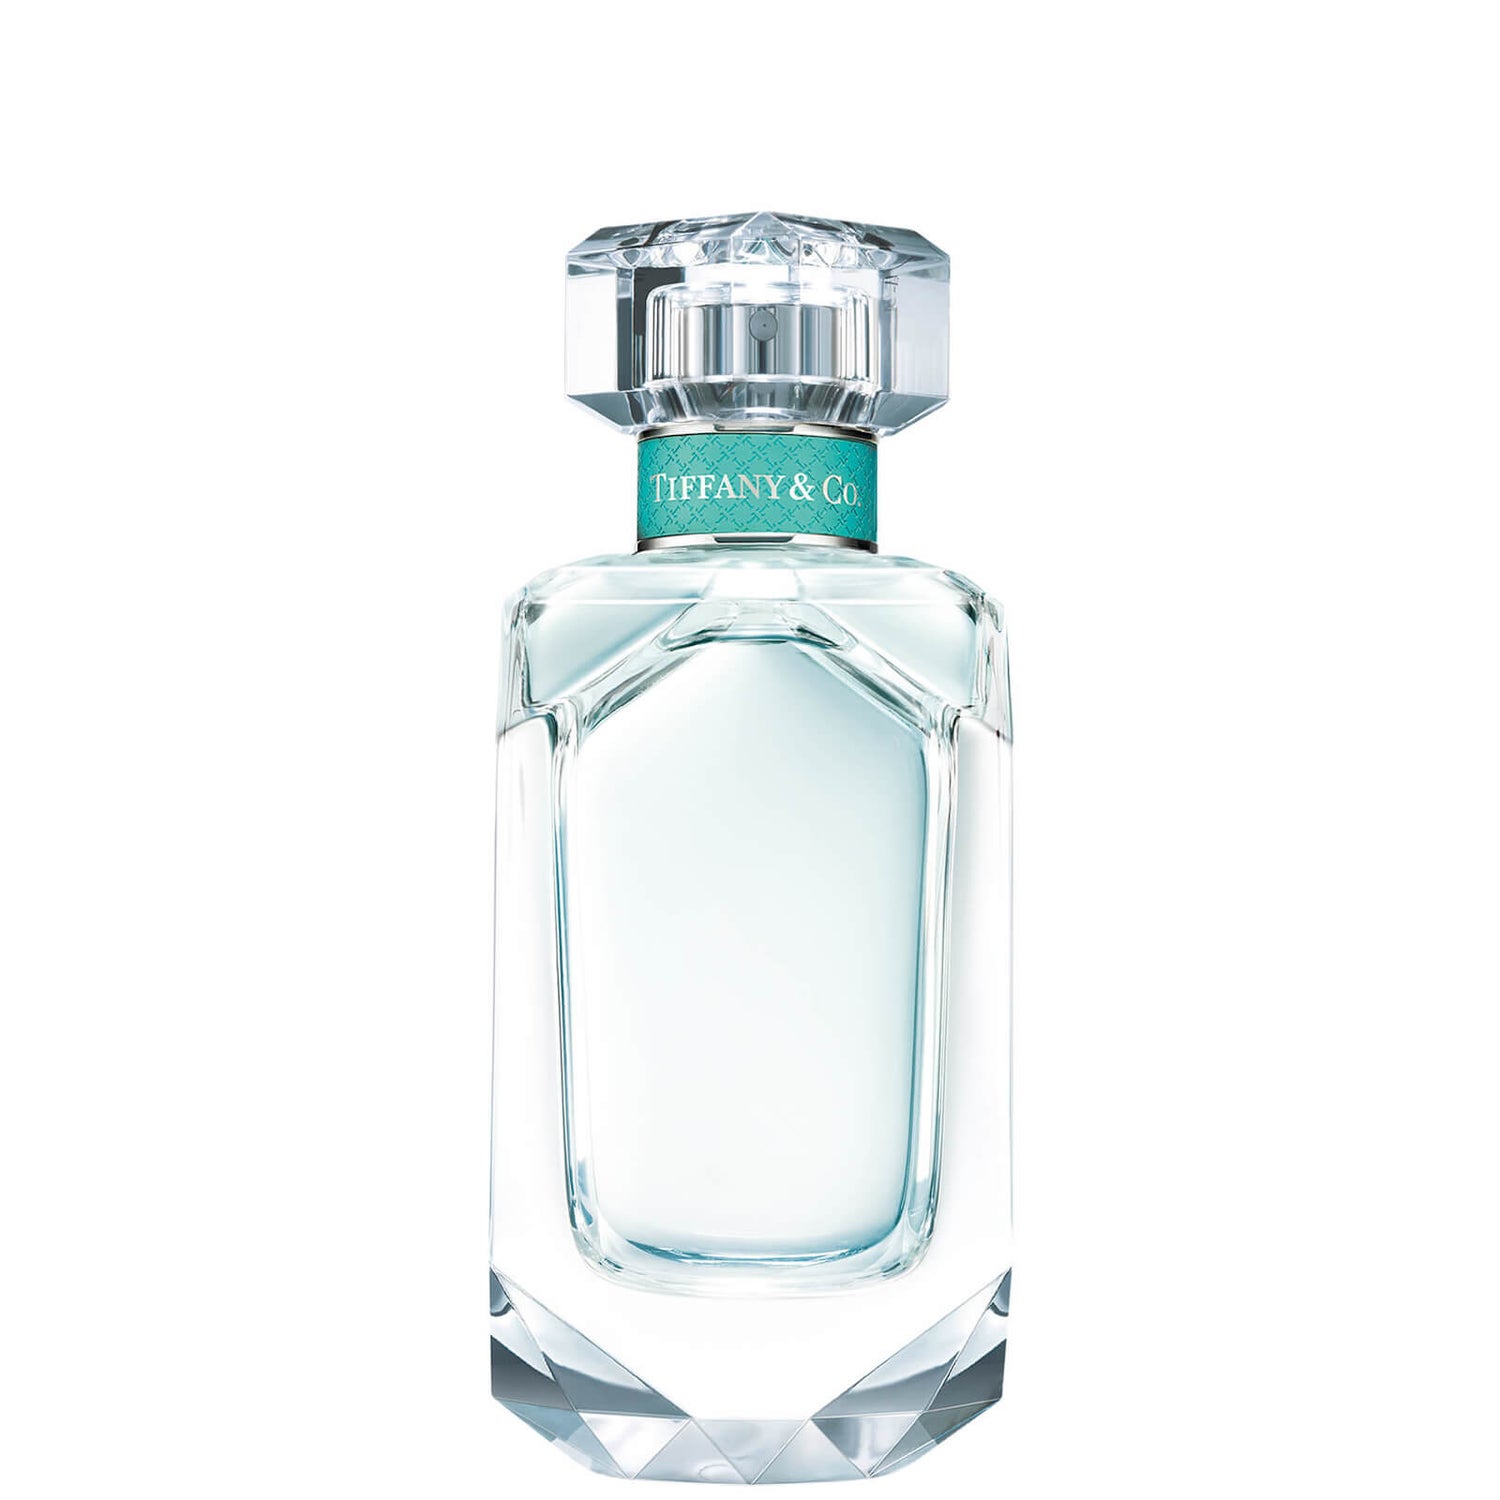 Tiffany & Co. Eau de Parfum for Her 75ml